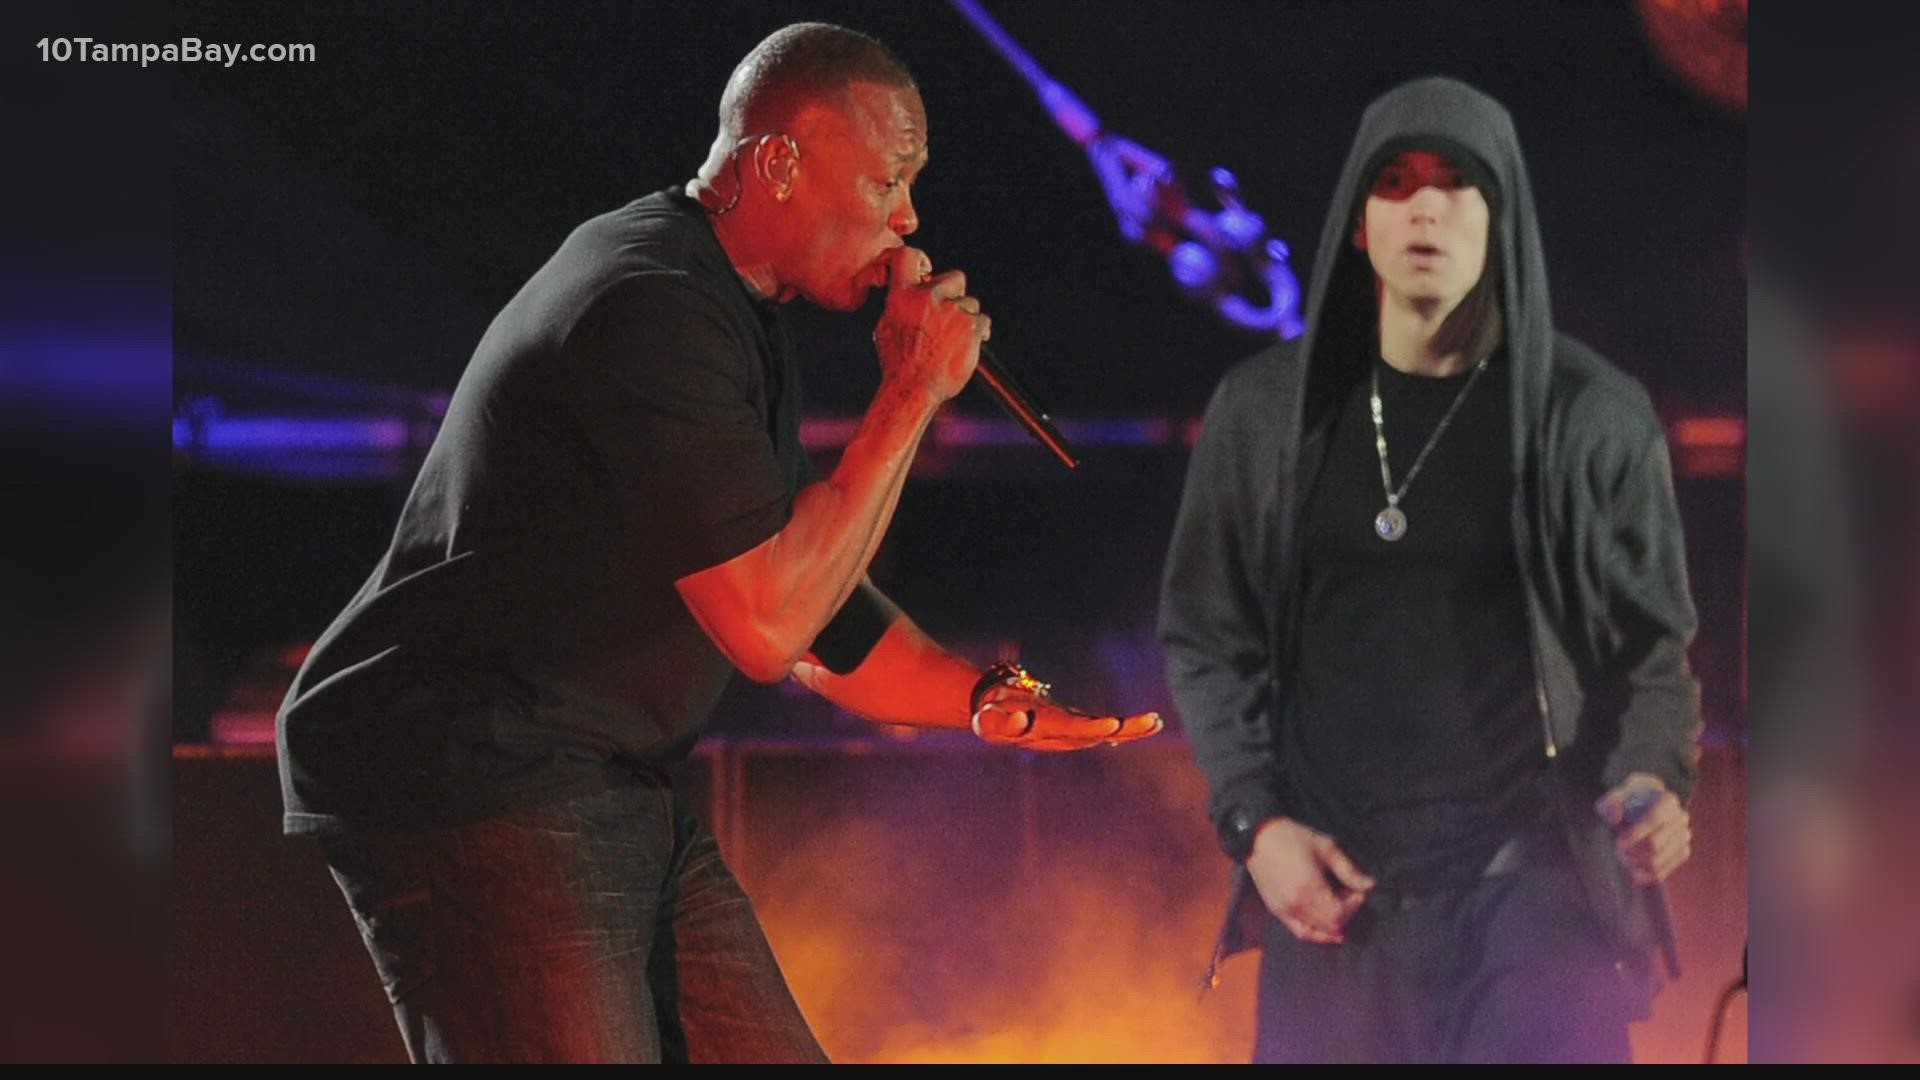 Super Bowl halftime: Dre, Snoop, Eminem, Mary J. Blige, Lamar